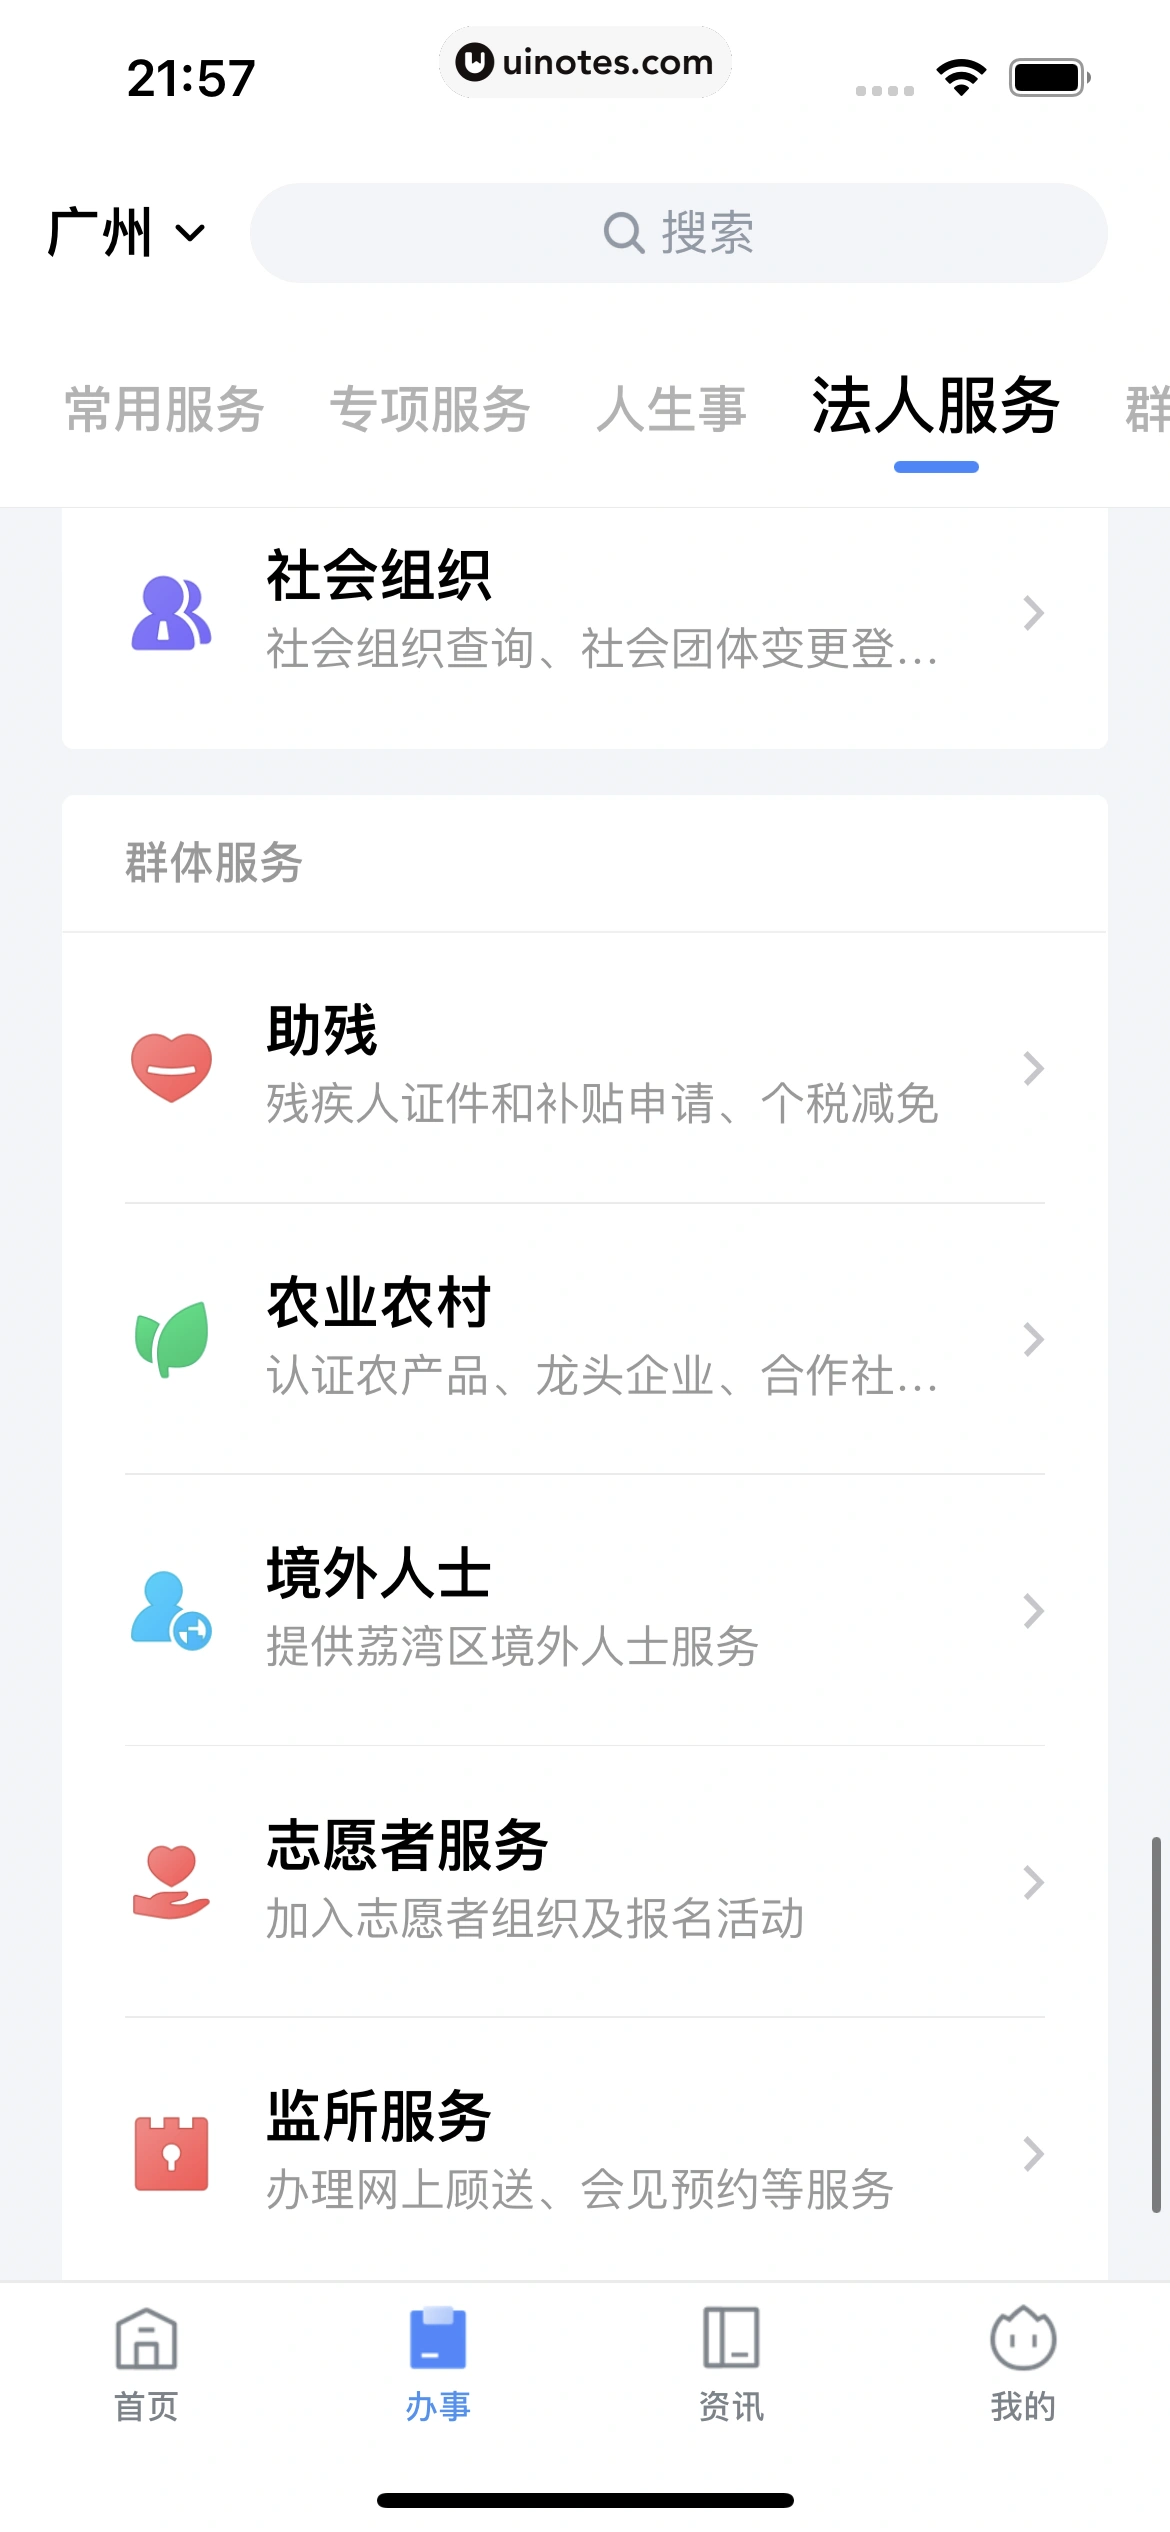 粤省事 App 截图 117 - UI Notes